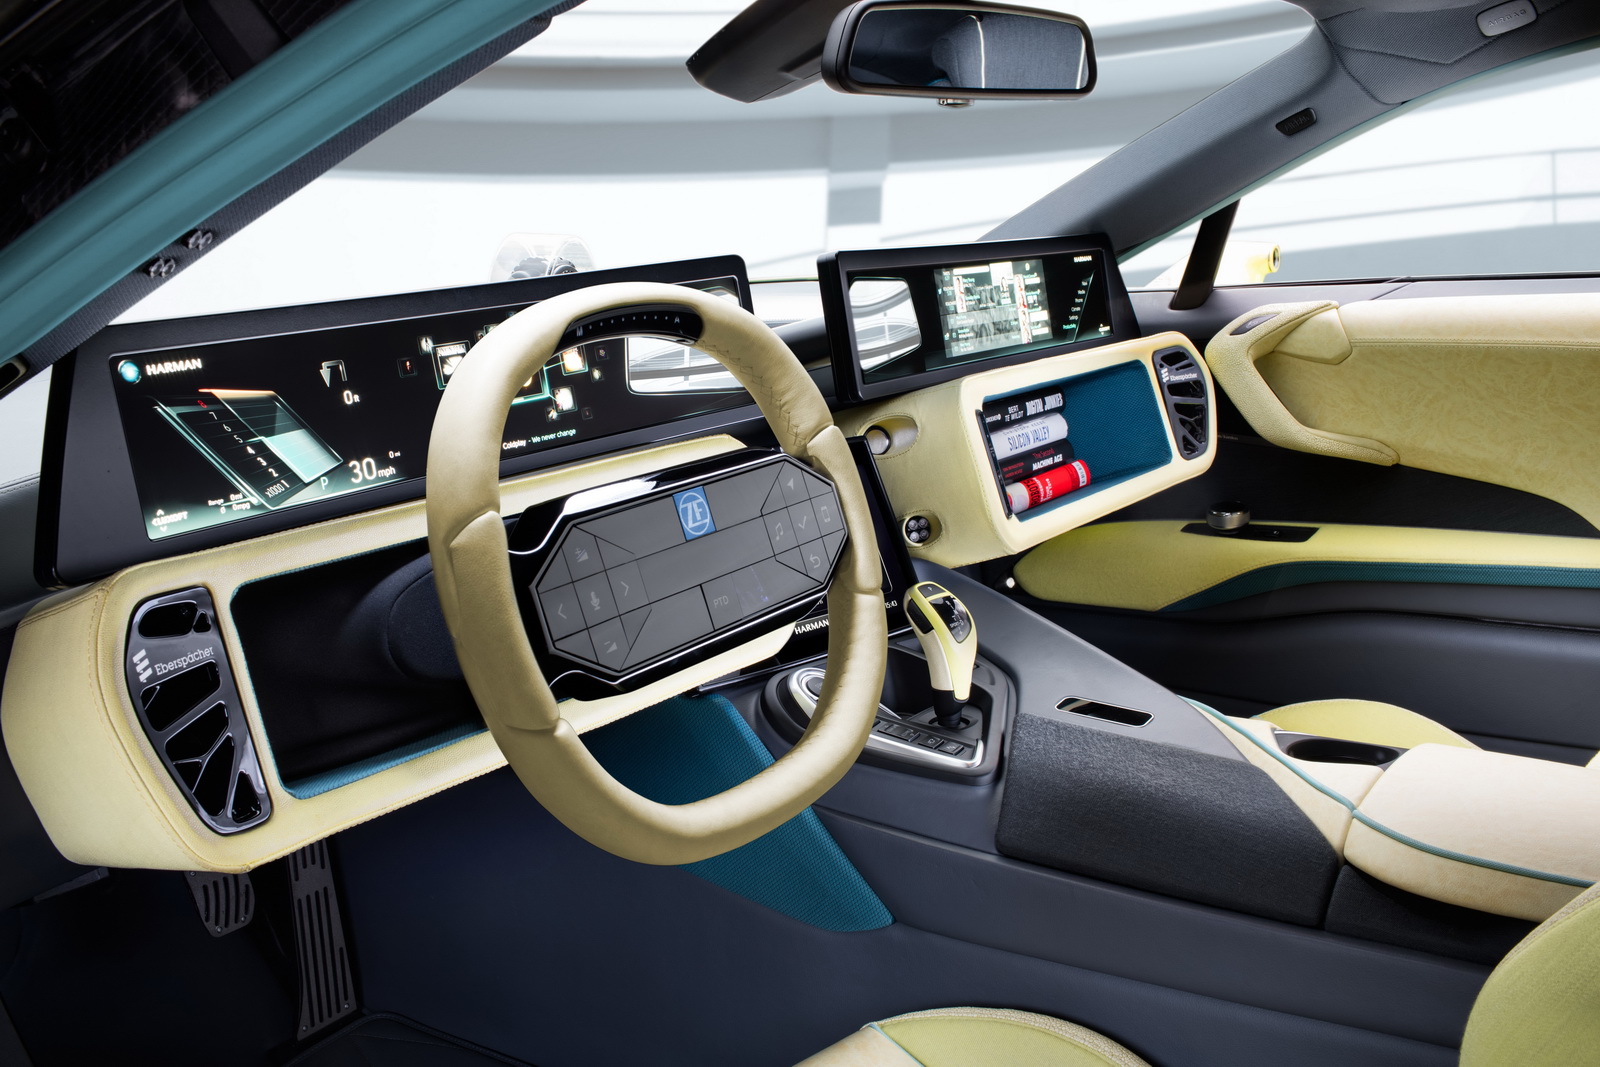 El Rinspeed Etos Concept aparecerá también en Ginebra como un BMW i8 autónomo